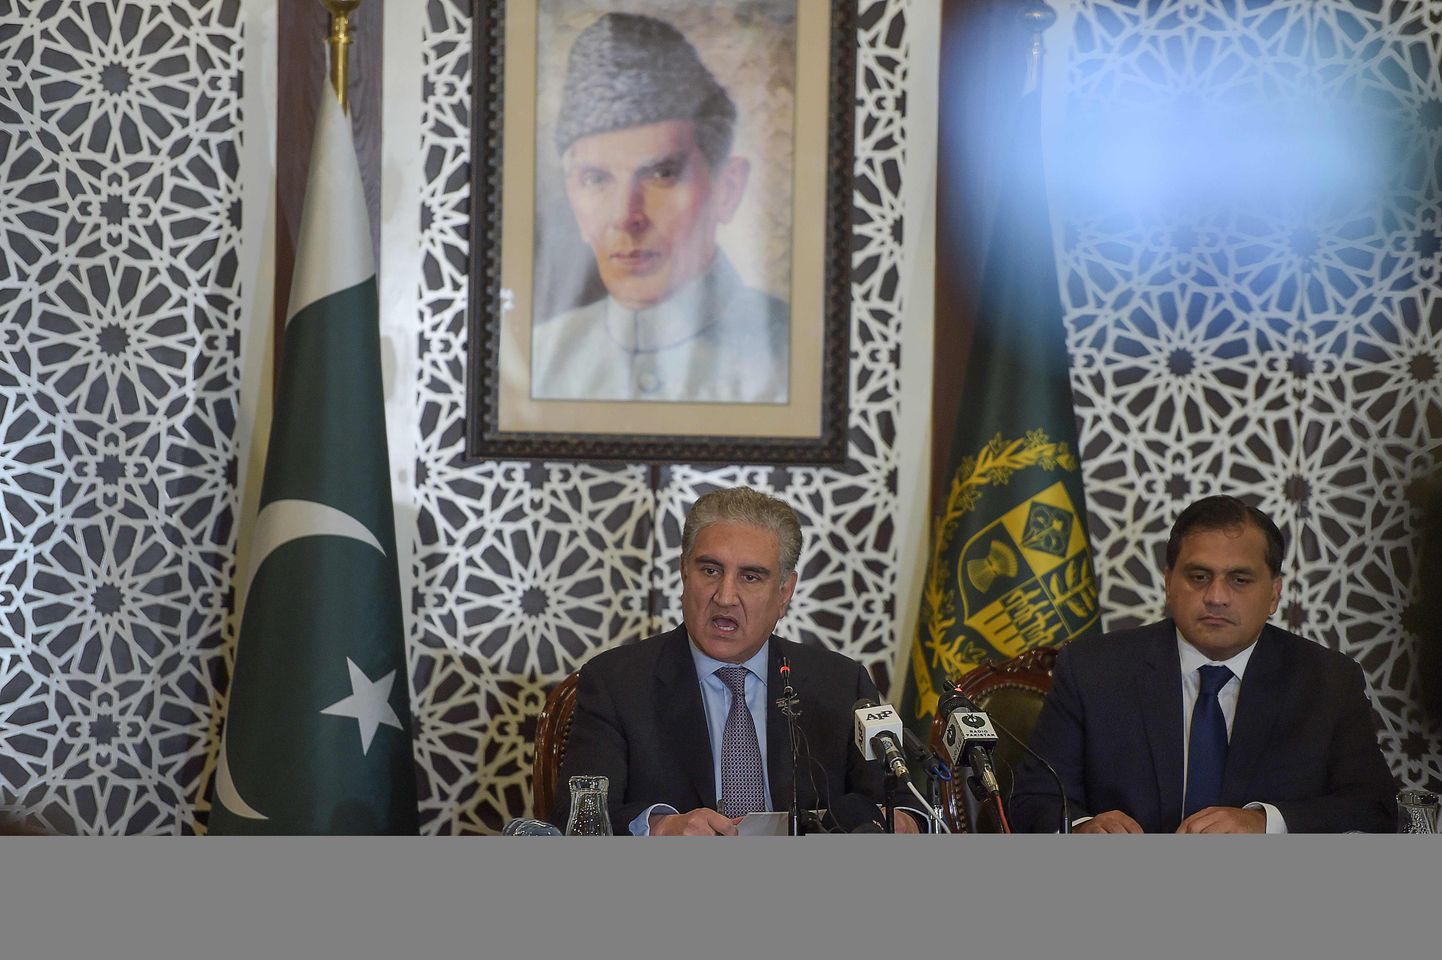 Pakistani välisminister Shah Mehmood Qureshi (vasakul) neljapäeval välisministeeriumis pressikonverentsil.